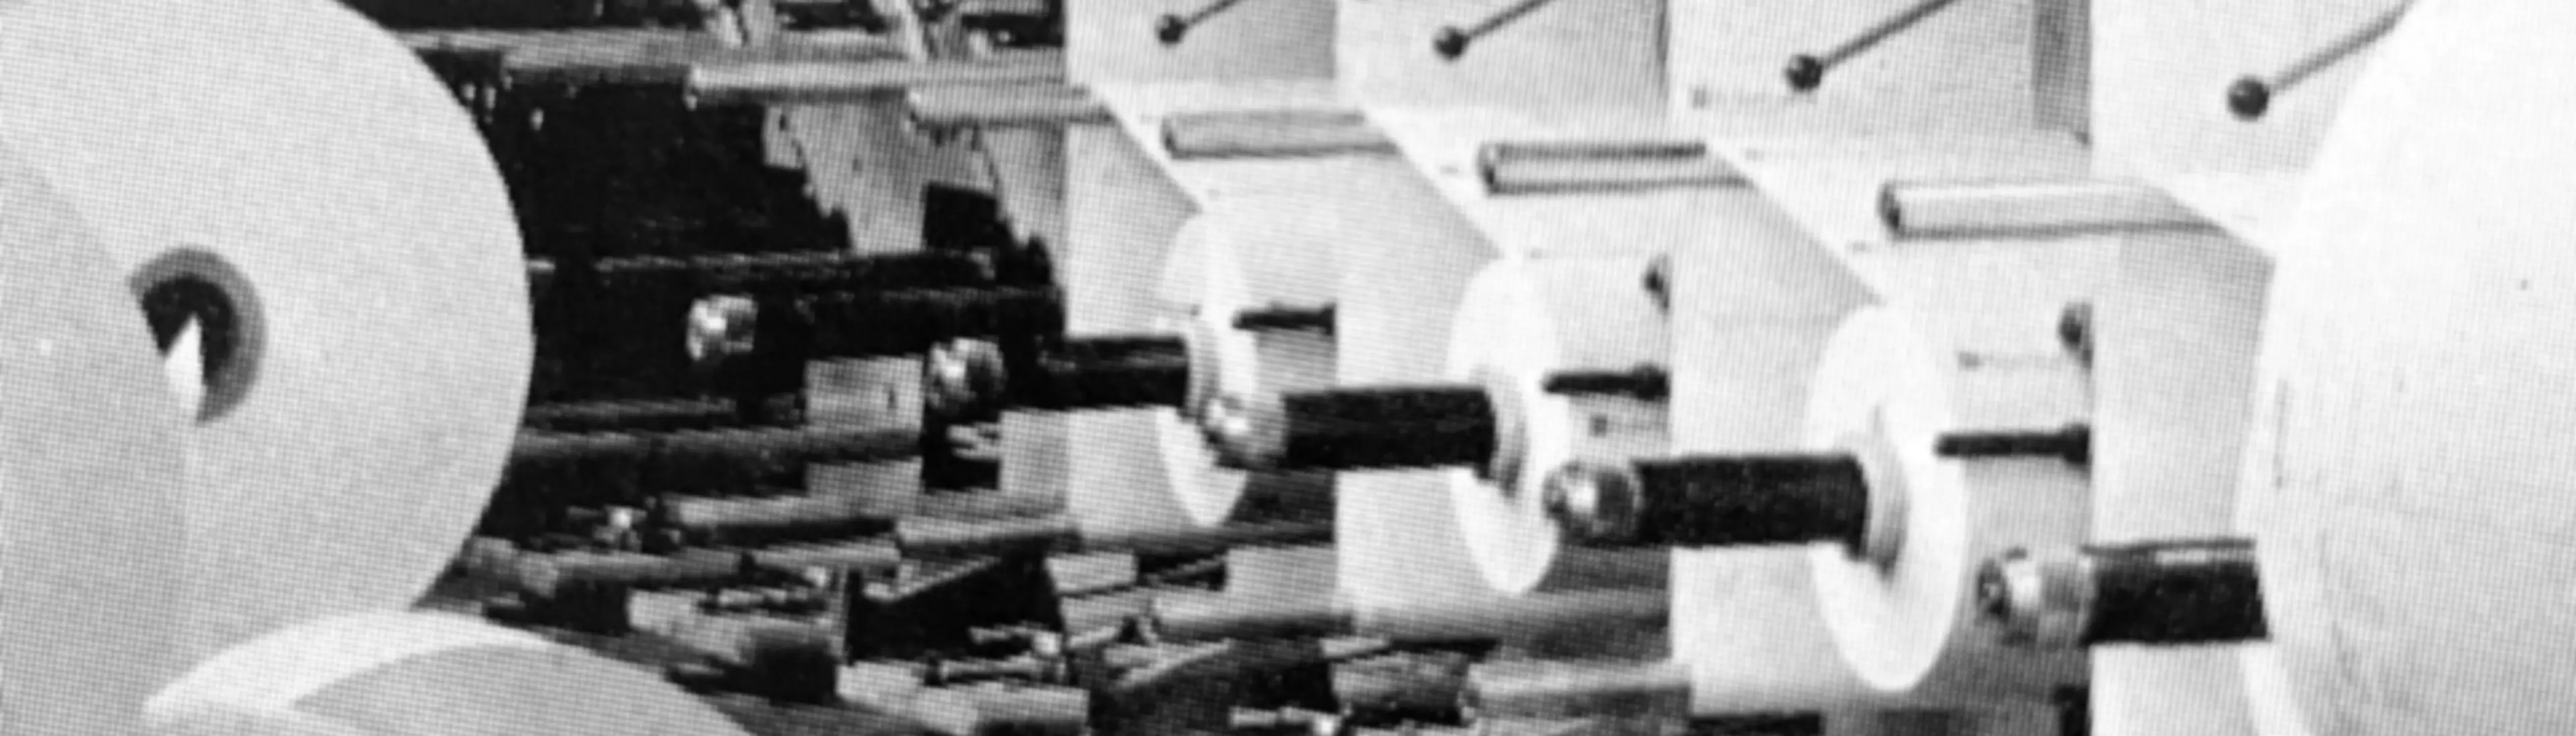 Blankettproduksjon på 1960-tallet